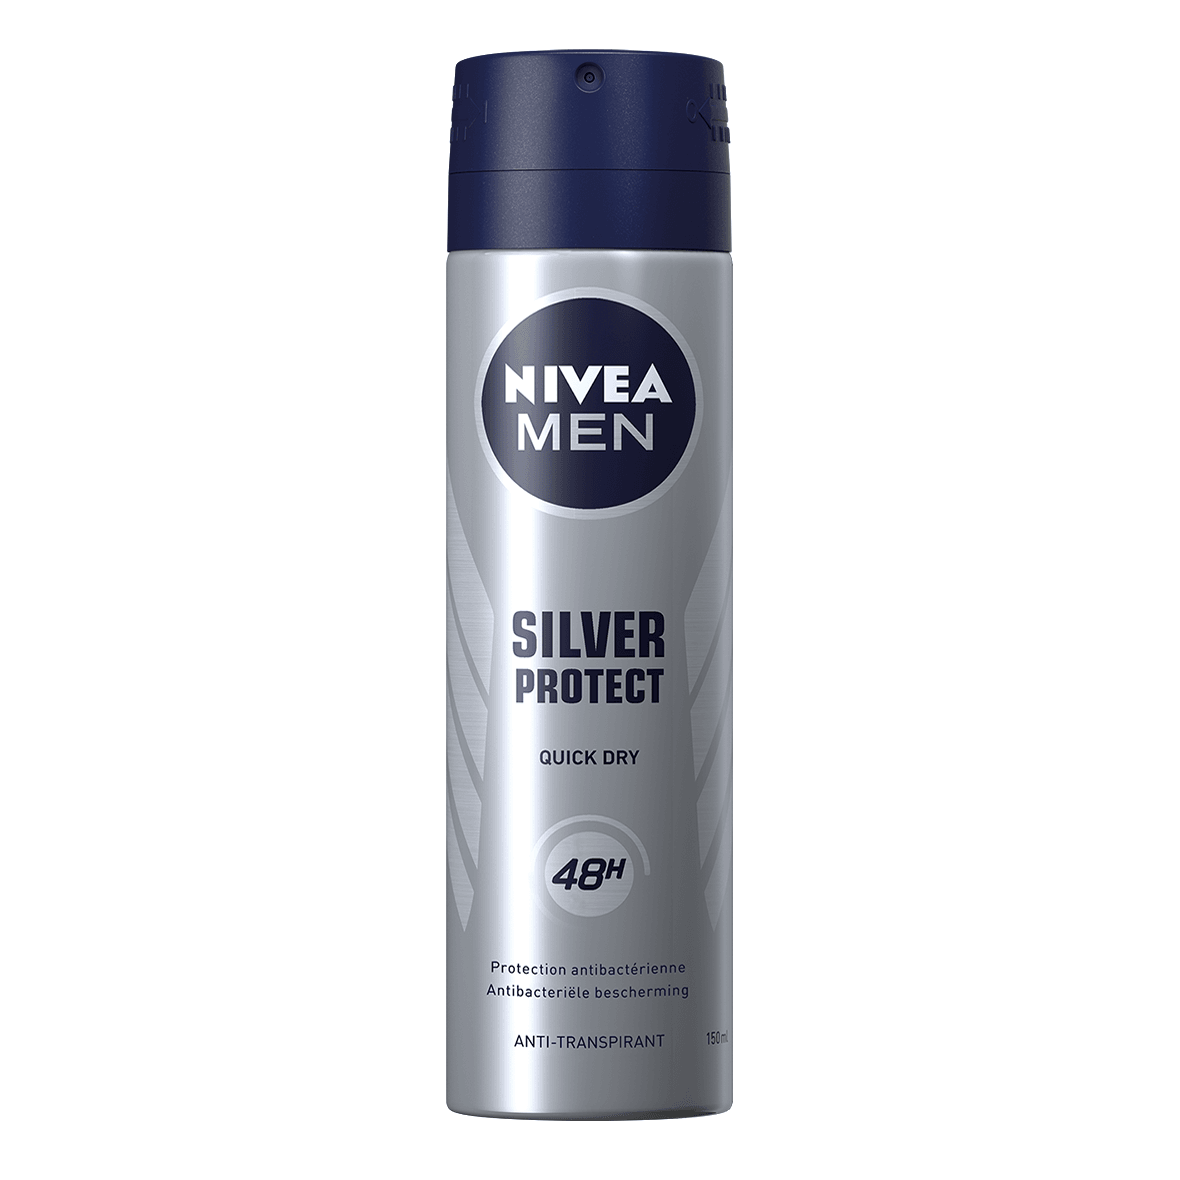 Nivea Men Spray Deodorant 150mlNivea Men Silver Protect Spray Deodorant 150mlorabelca